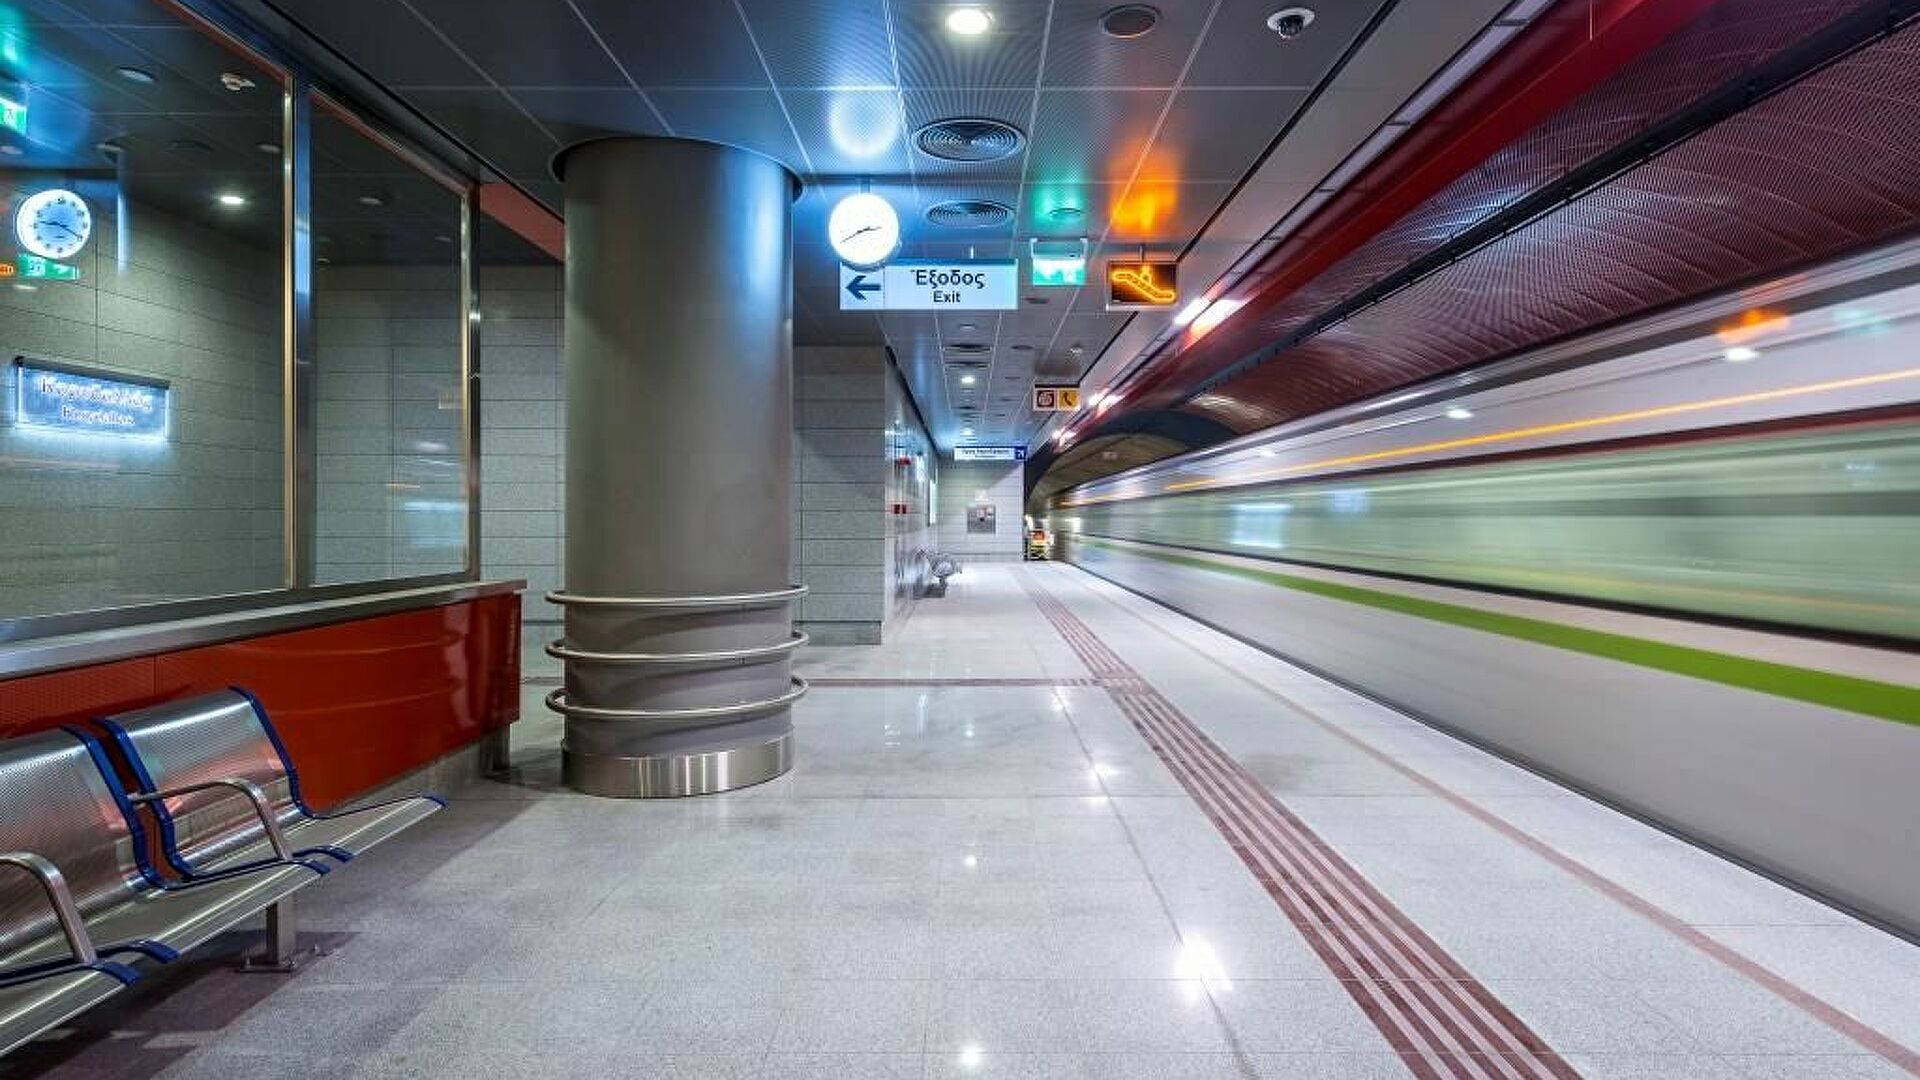 Σε ένα χρόνο παραδίδεται το Μετρό της Θεσσαλονίκης